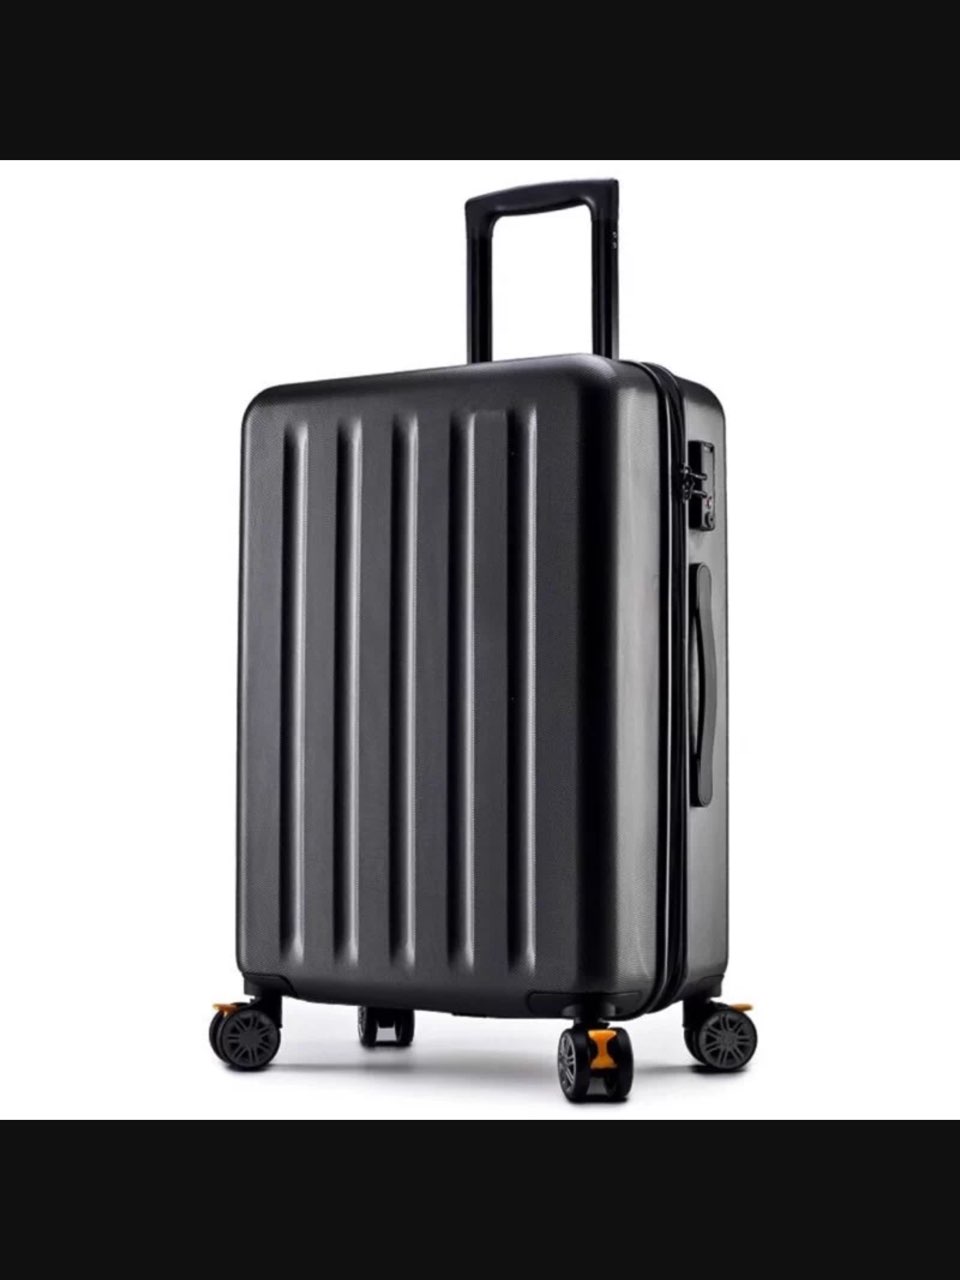 出售小米90分的28寸的行李箱,黑色,买的499,自己用过一次,现在低价